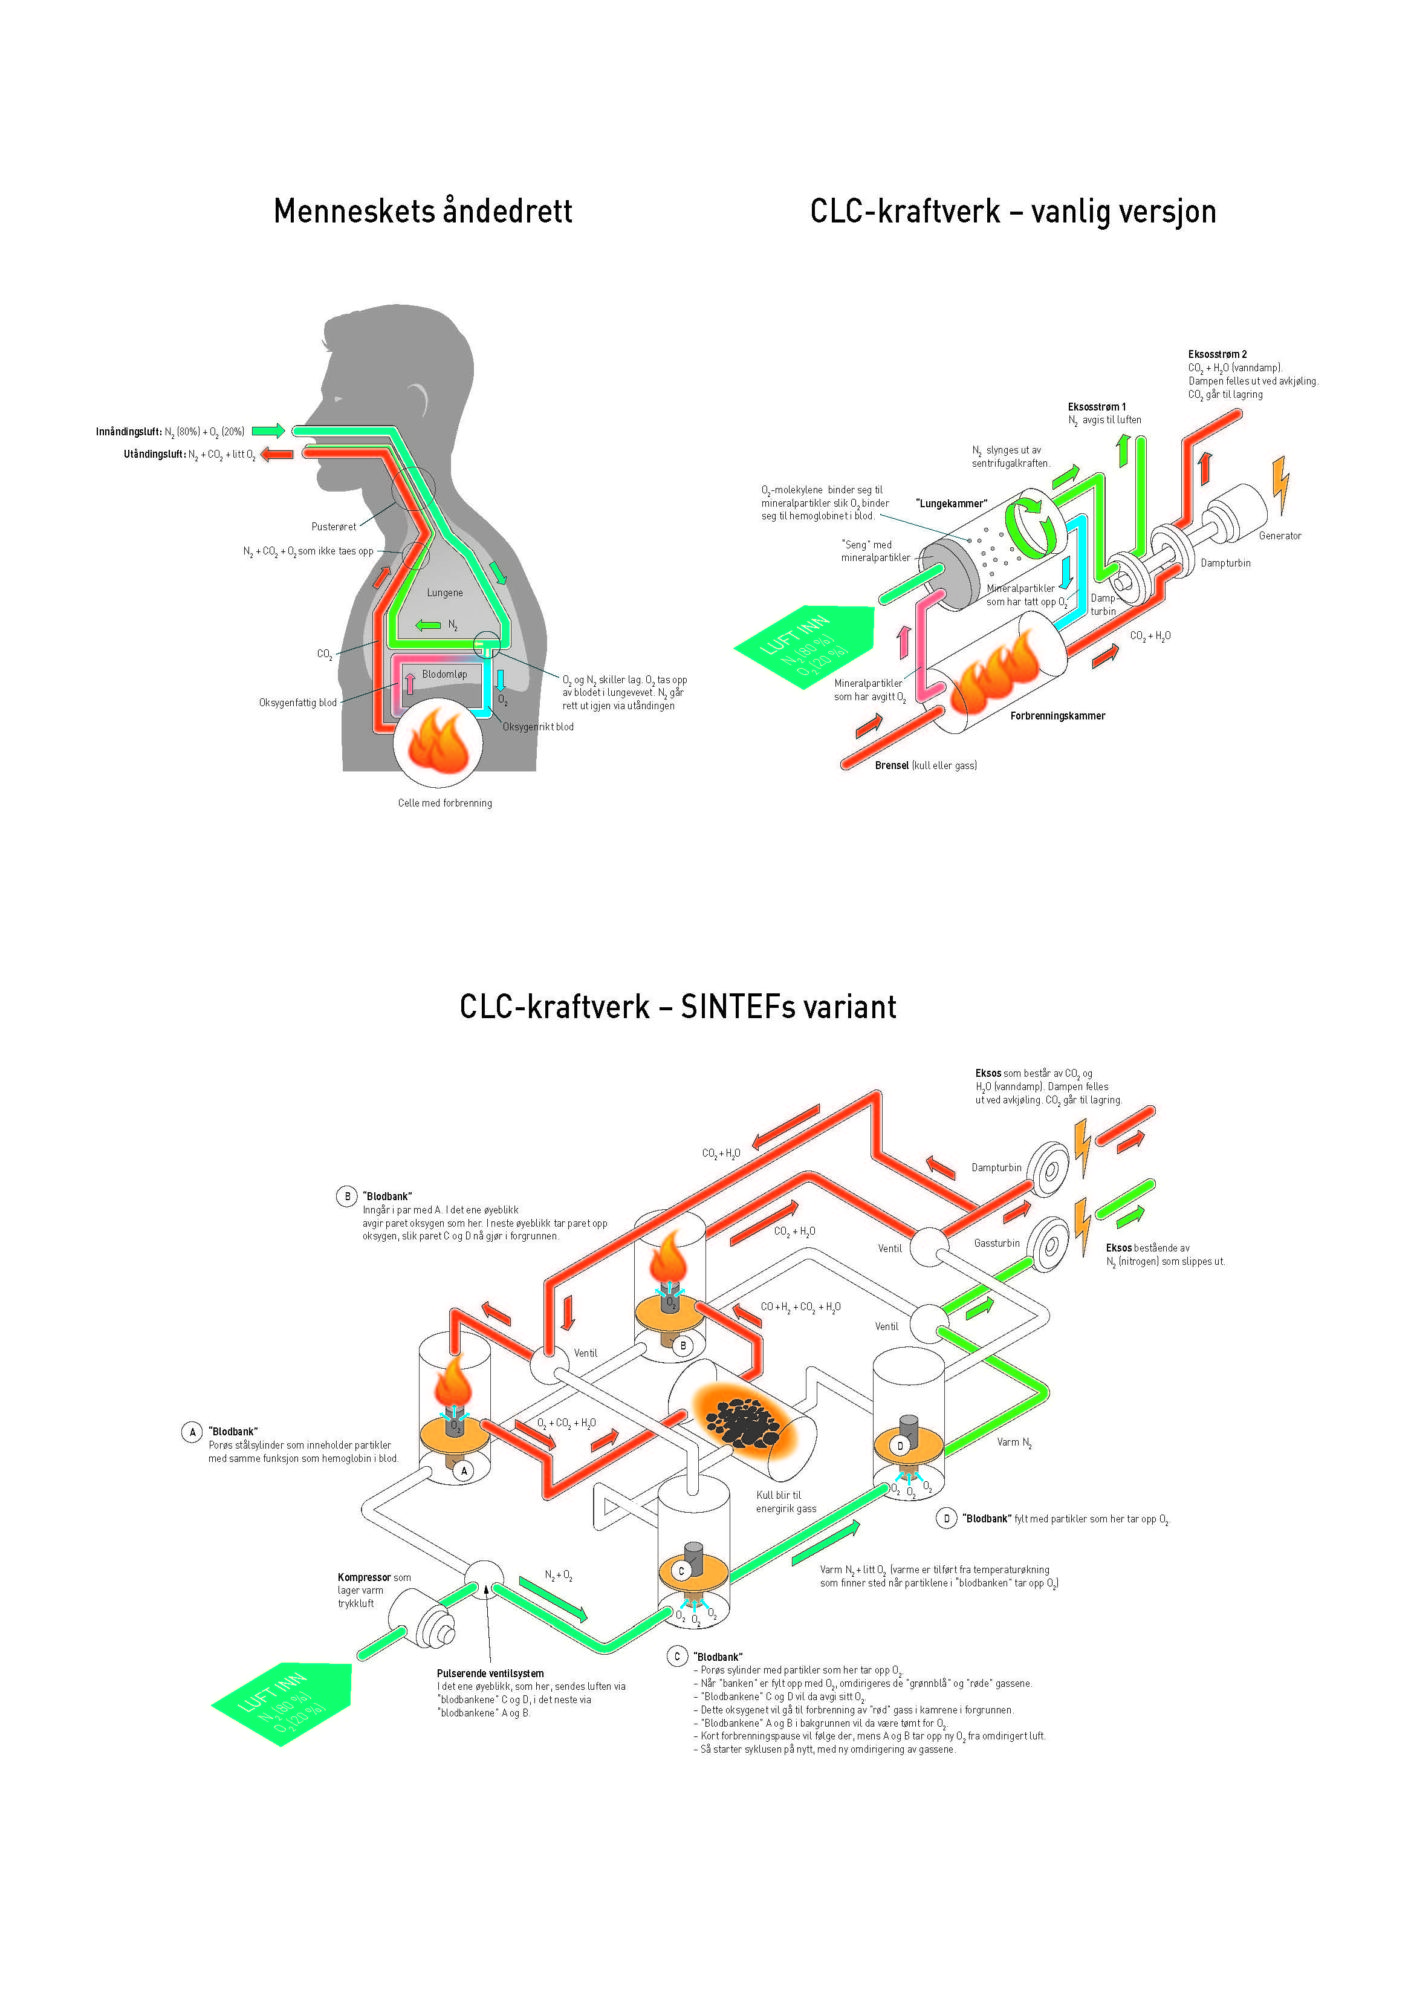 Grafikk viser at CLC-kraftverk har lånt trekk fra menneskets åndedrett.